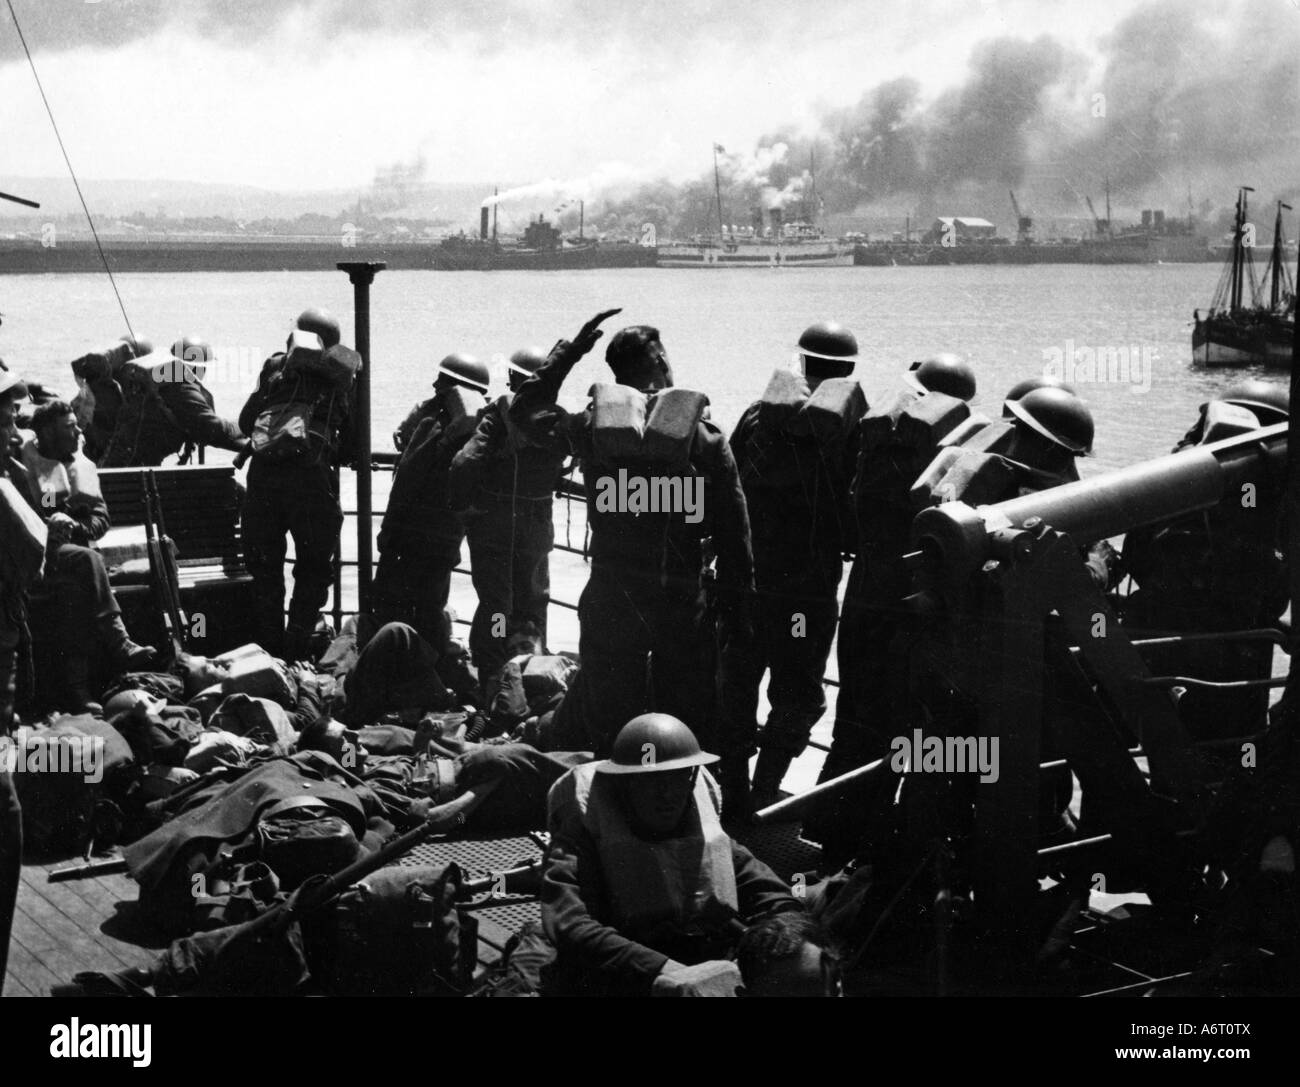 Eventi, Seconda guerra mondiale / seconda guerra mondiale, Francia, Dunkerque, evacuazione delle truppe alleate 26.5.1940 - 4.6.1940, soldati britannici a bordo del 'Royal Sovereign', Foto Stock